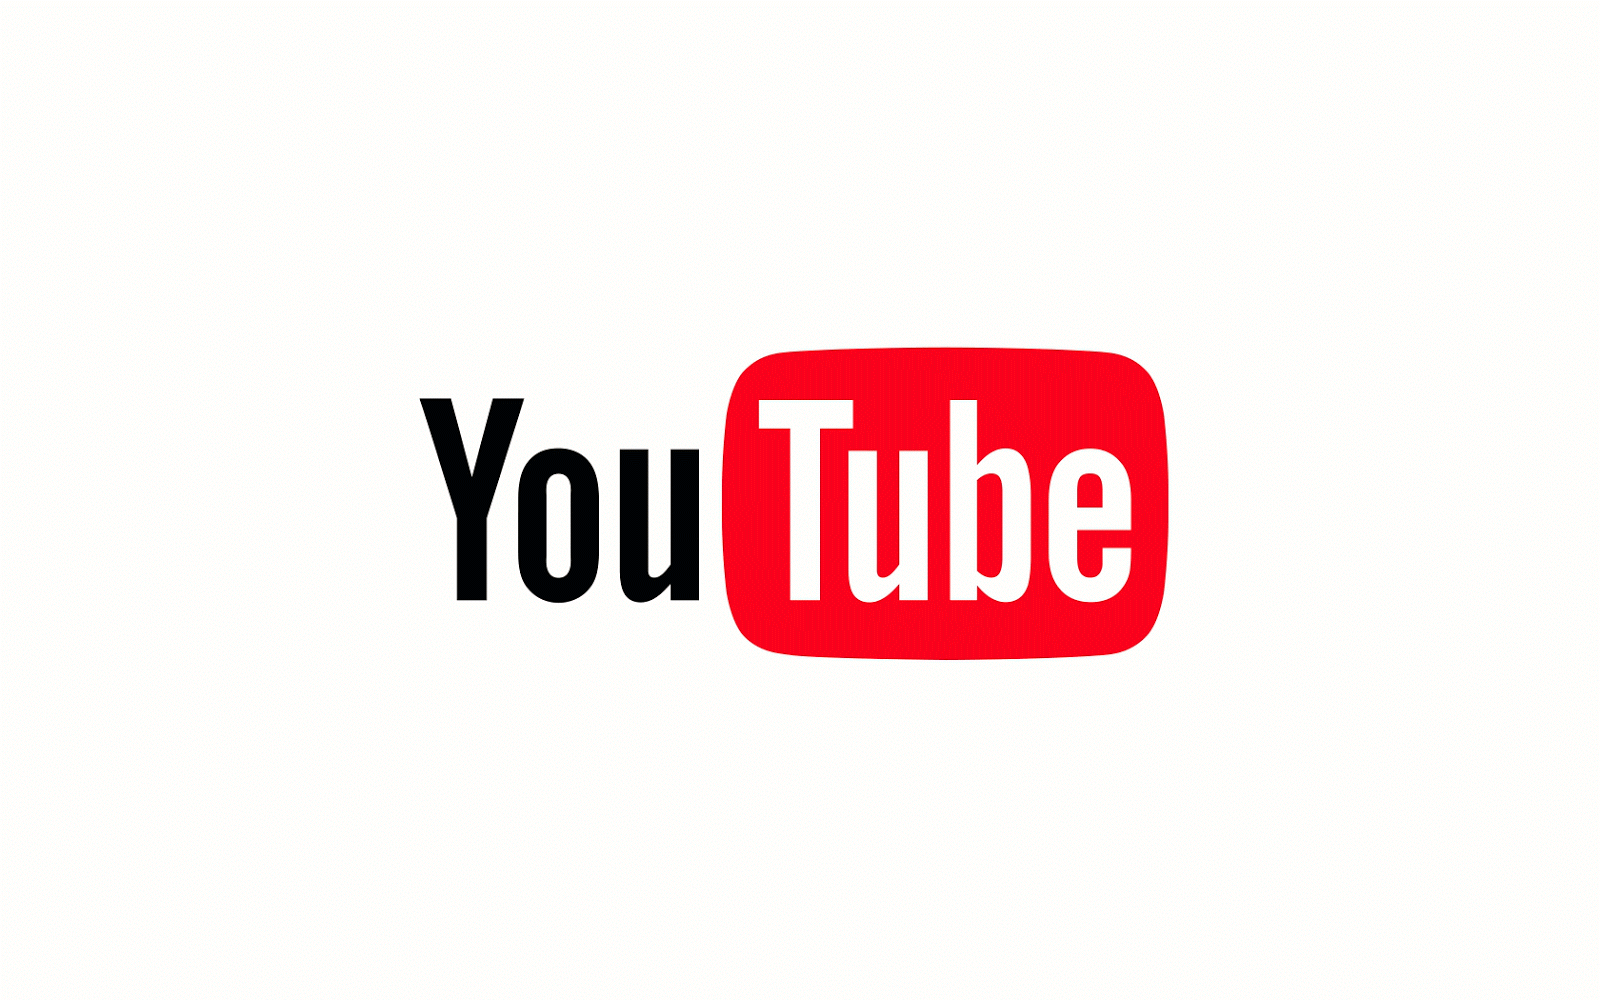 YouTube image